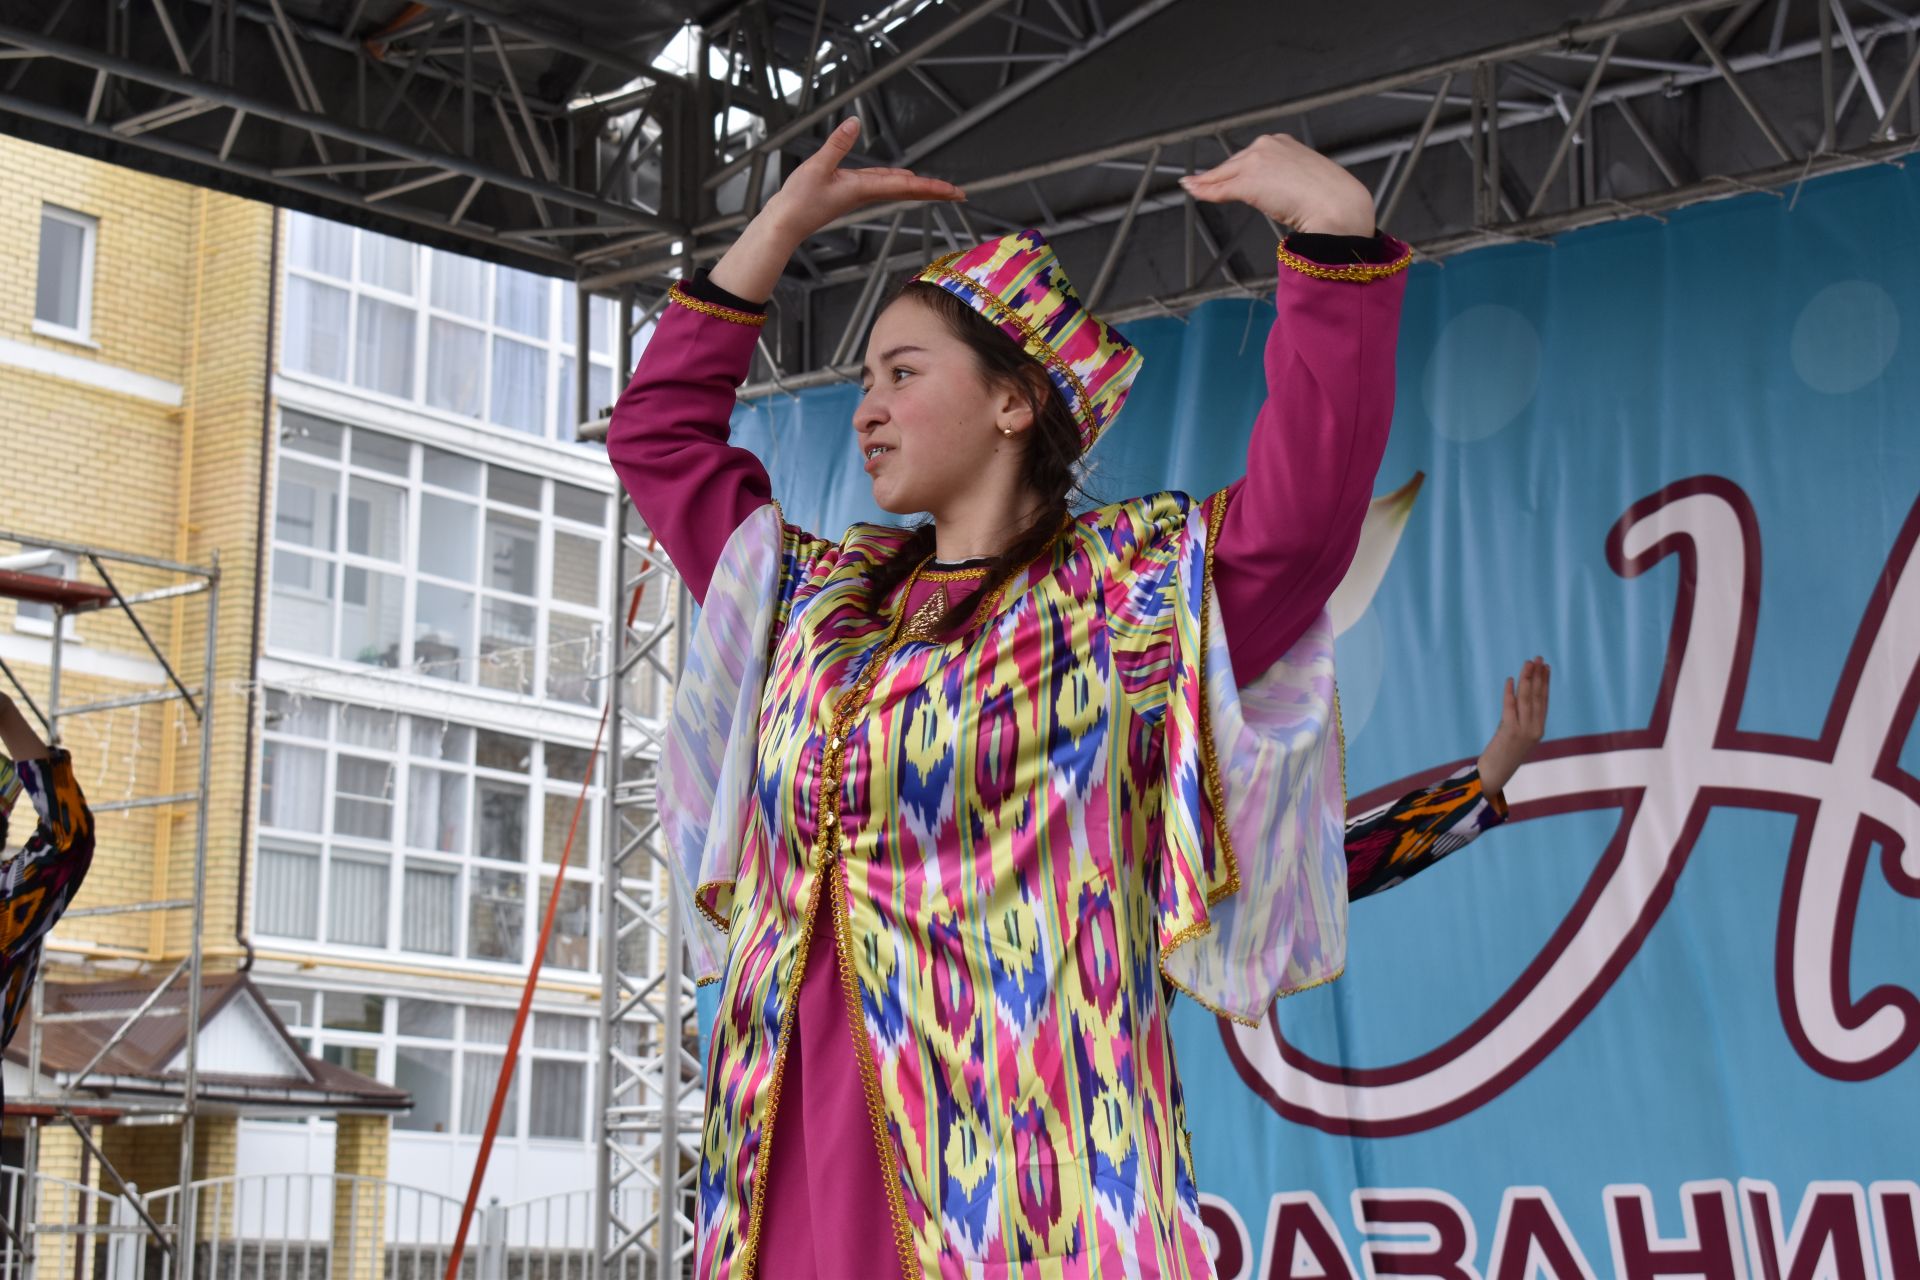 Восточные мотивы, горячий плов, танцы и игры: в Алексеевском отпраздновали Навруз